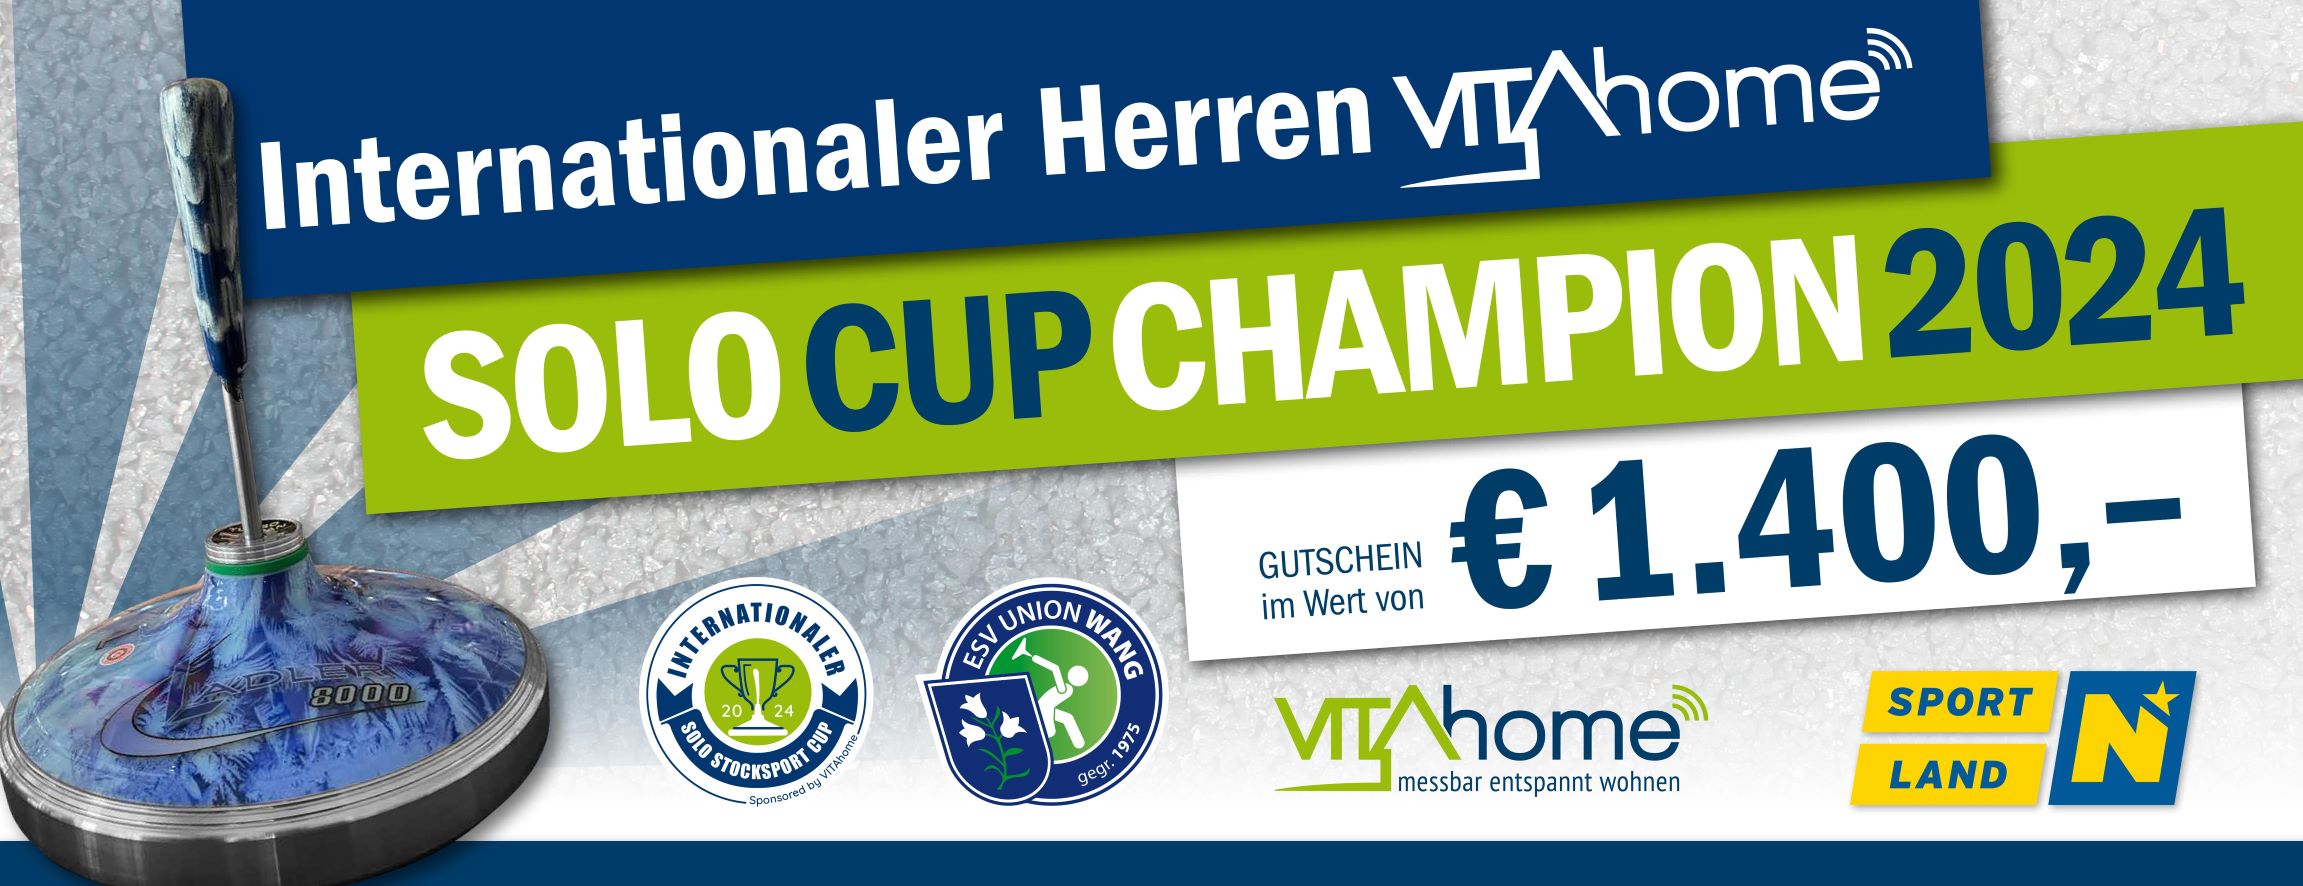 Scheck_Intern-Solo CUP 2024_65x25cm_Herren